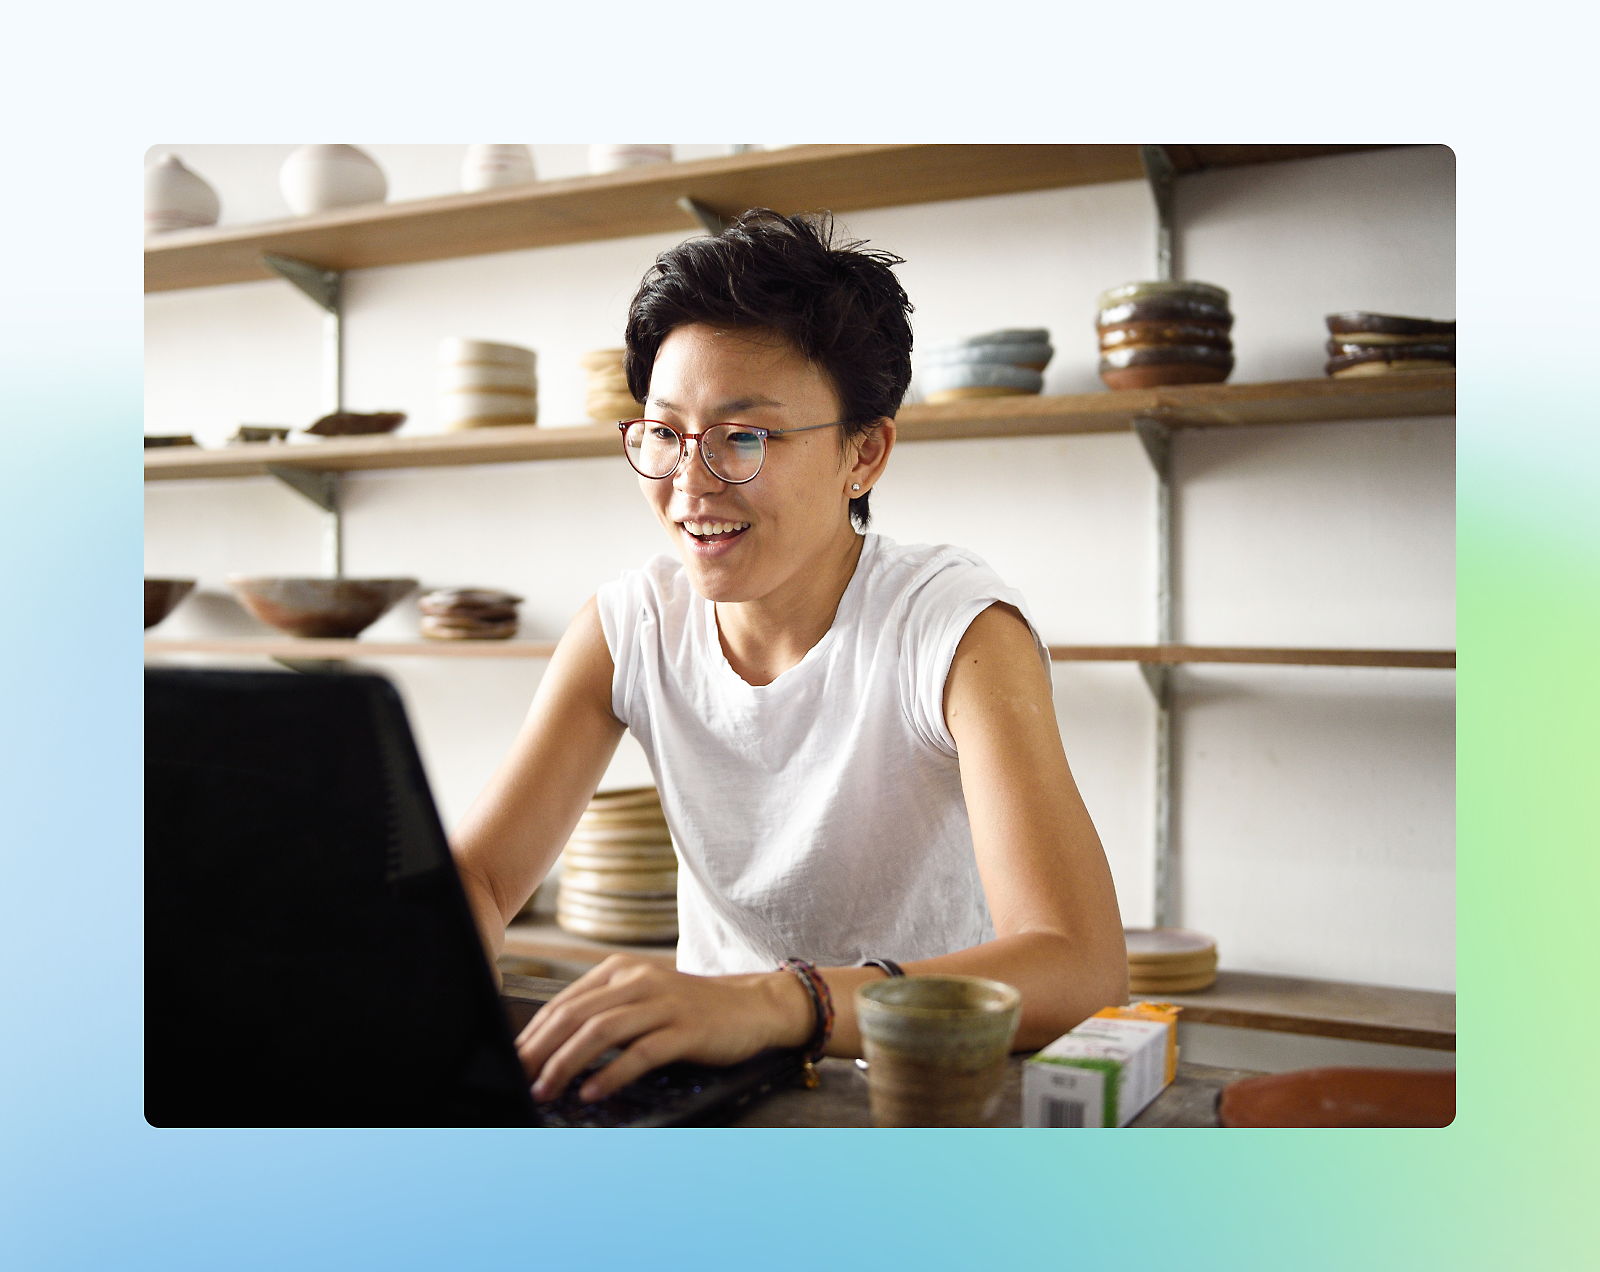 Uma pessoa usando óculos e uma camiseta branca sorrindo enquanto usa um laptop em uma sala com prateleiras cheias de cerâmica.